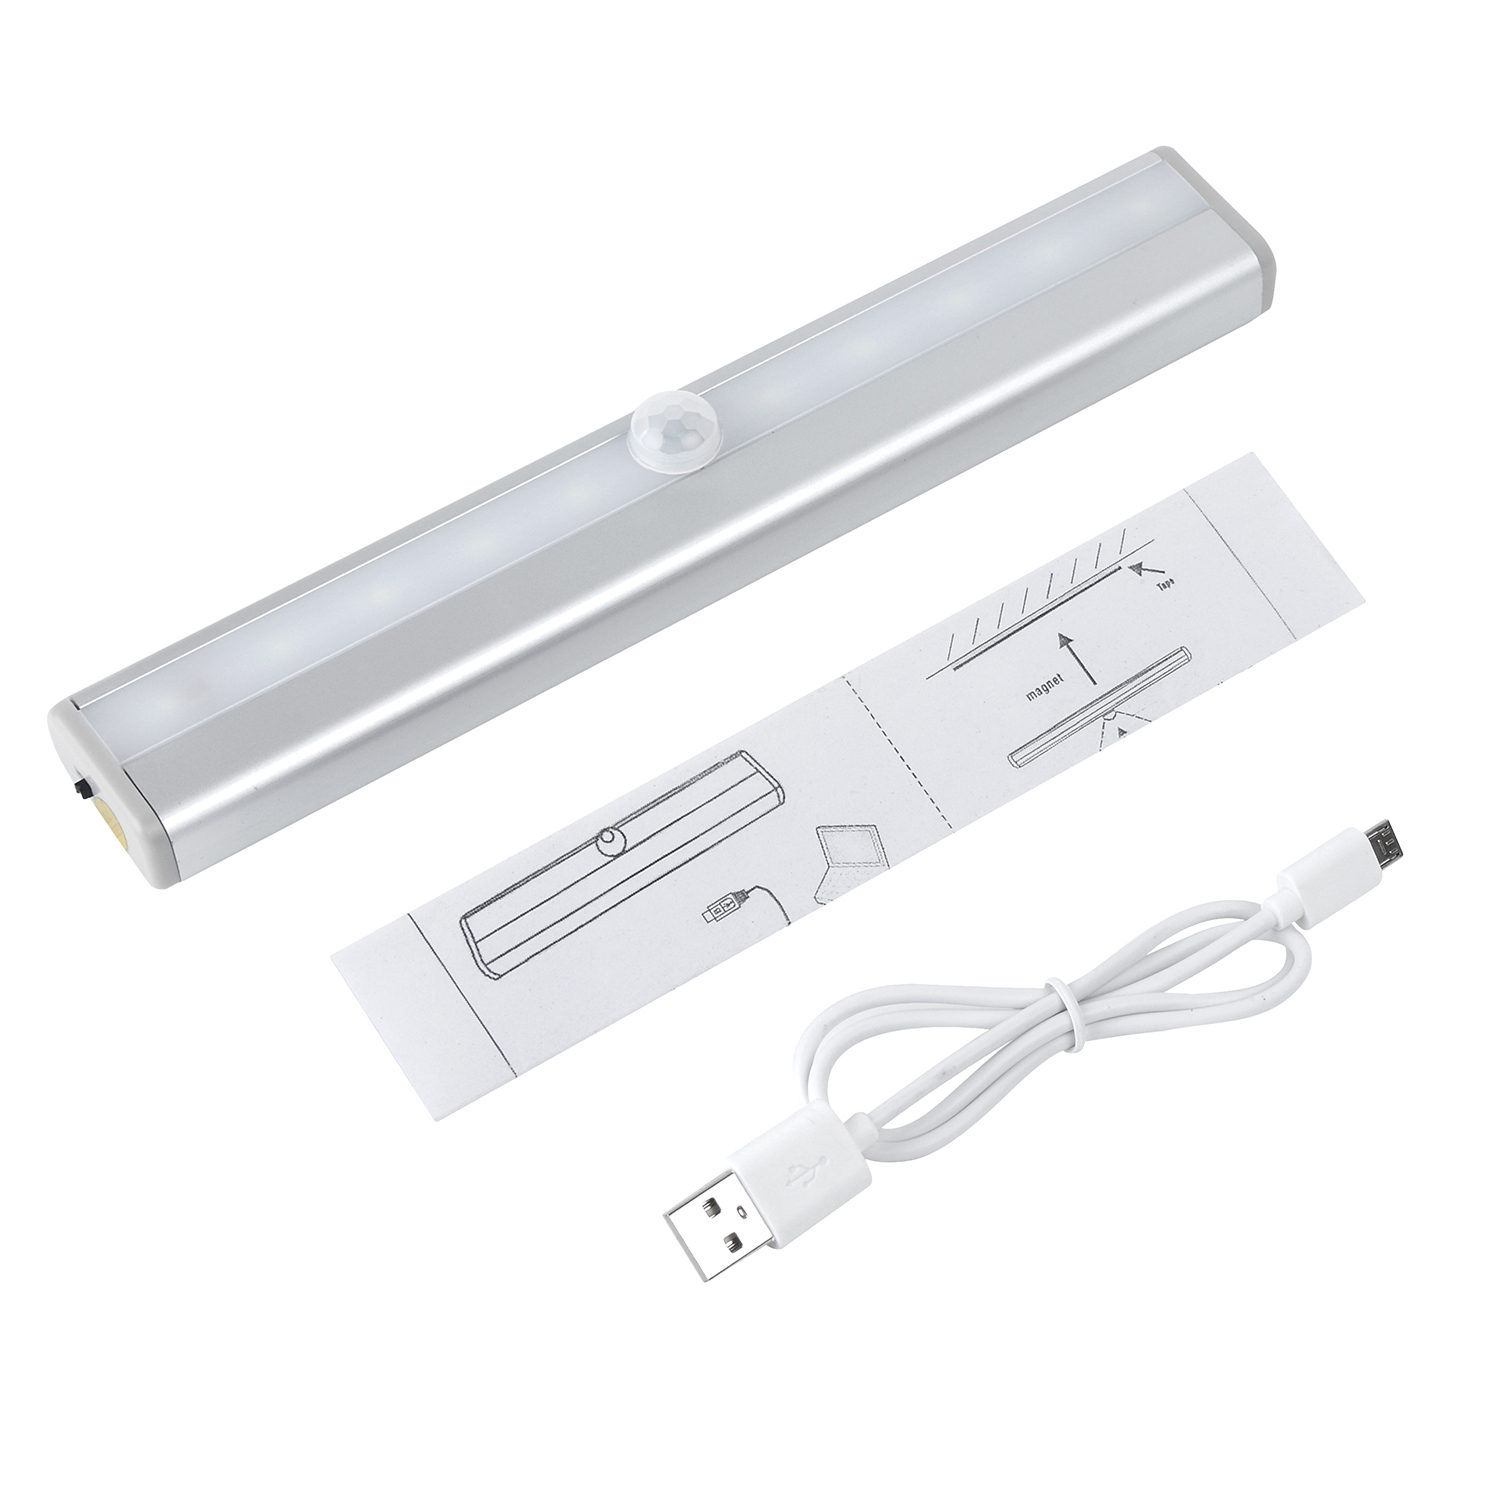 2016新款 升级版亚马逊**LED感应灯 USB充电 锂电池小夜灯